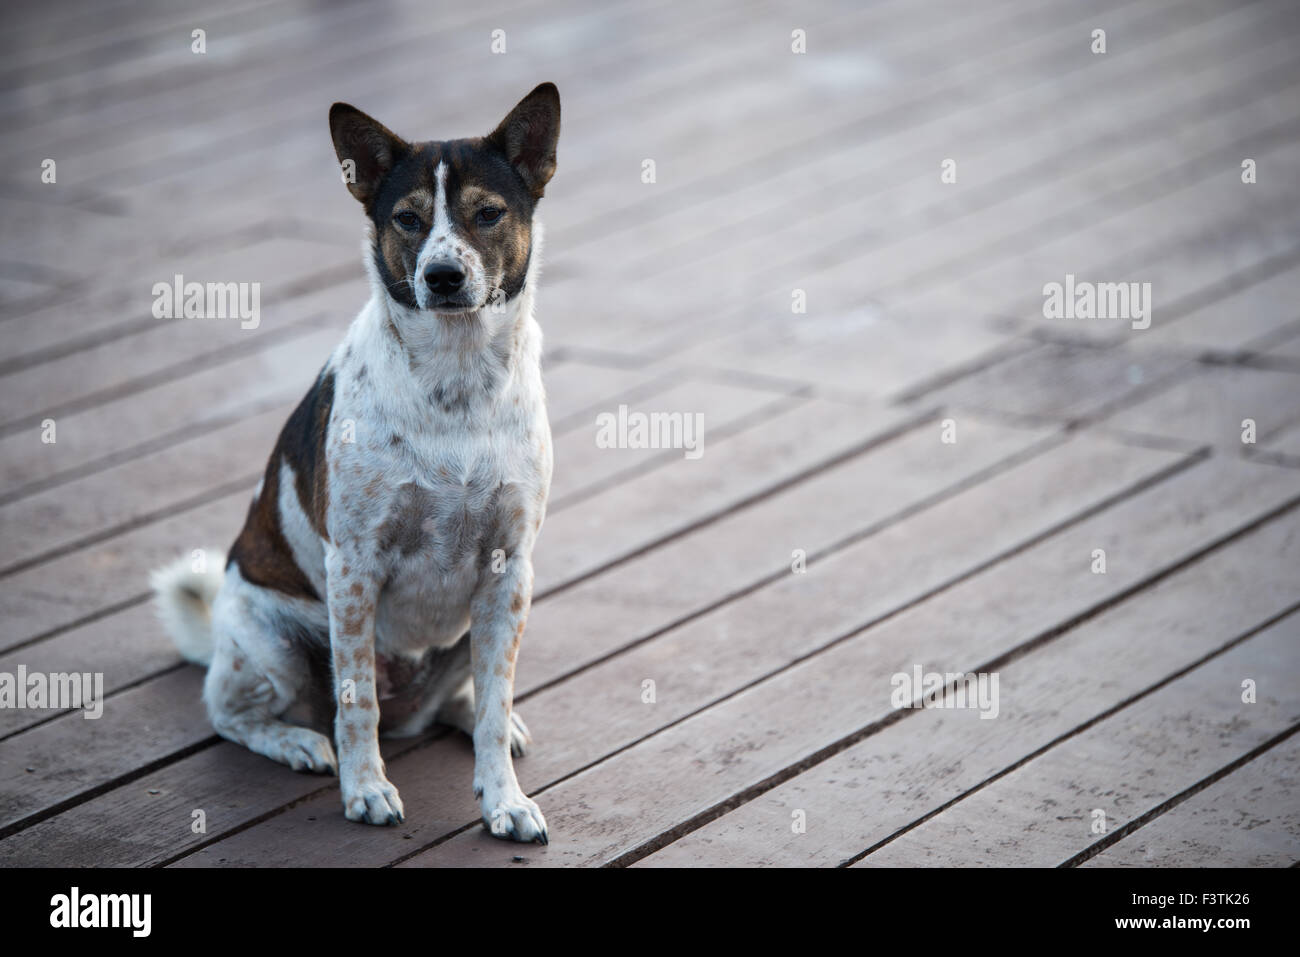 dog sitting on wood floors Stock Photo